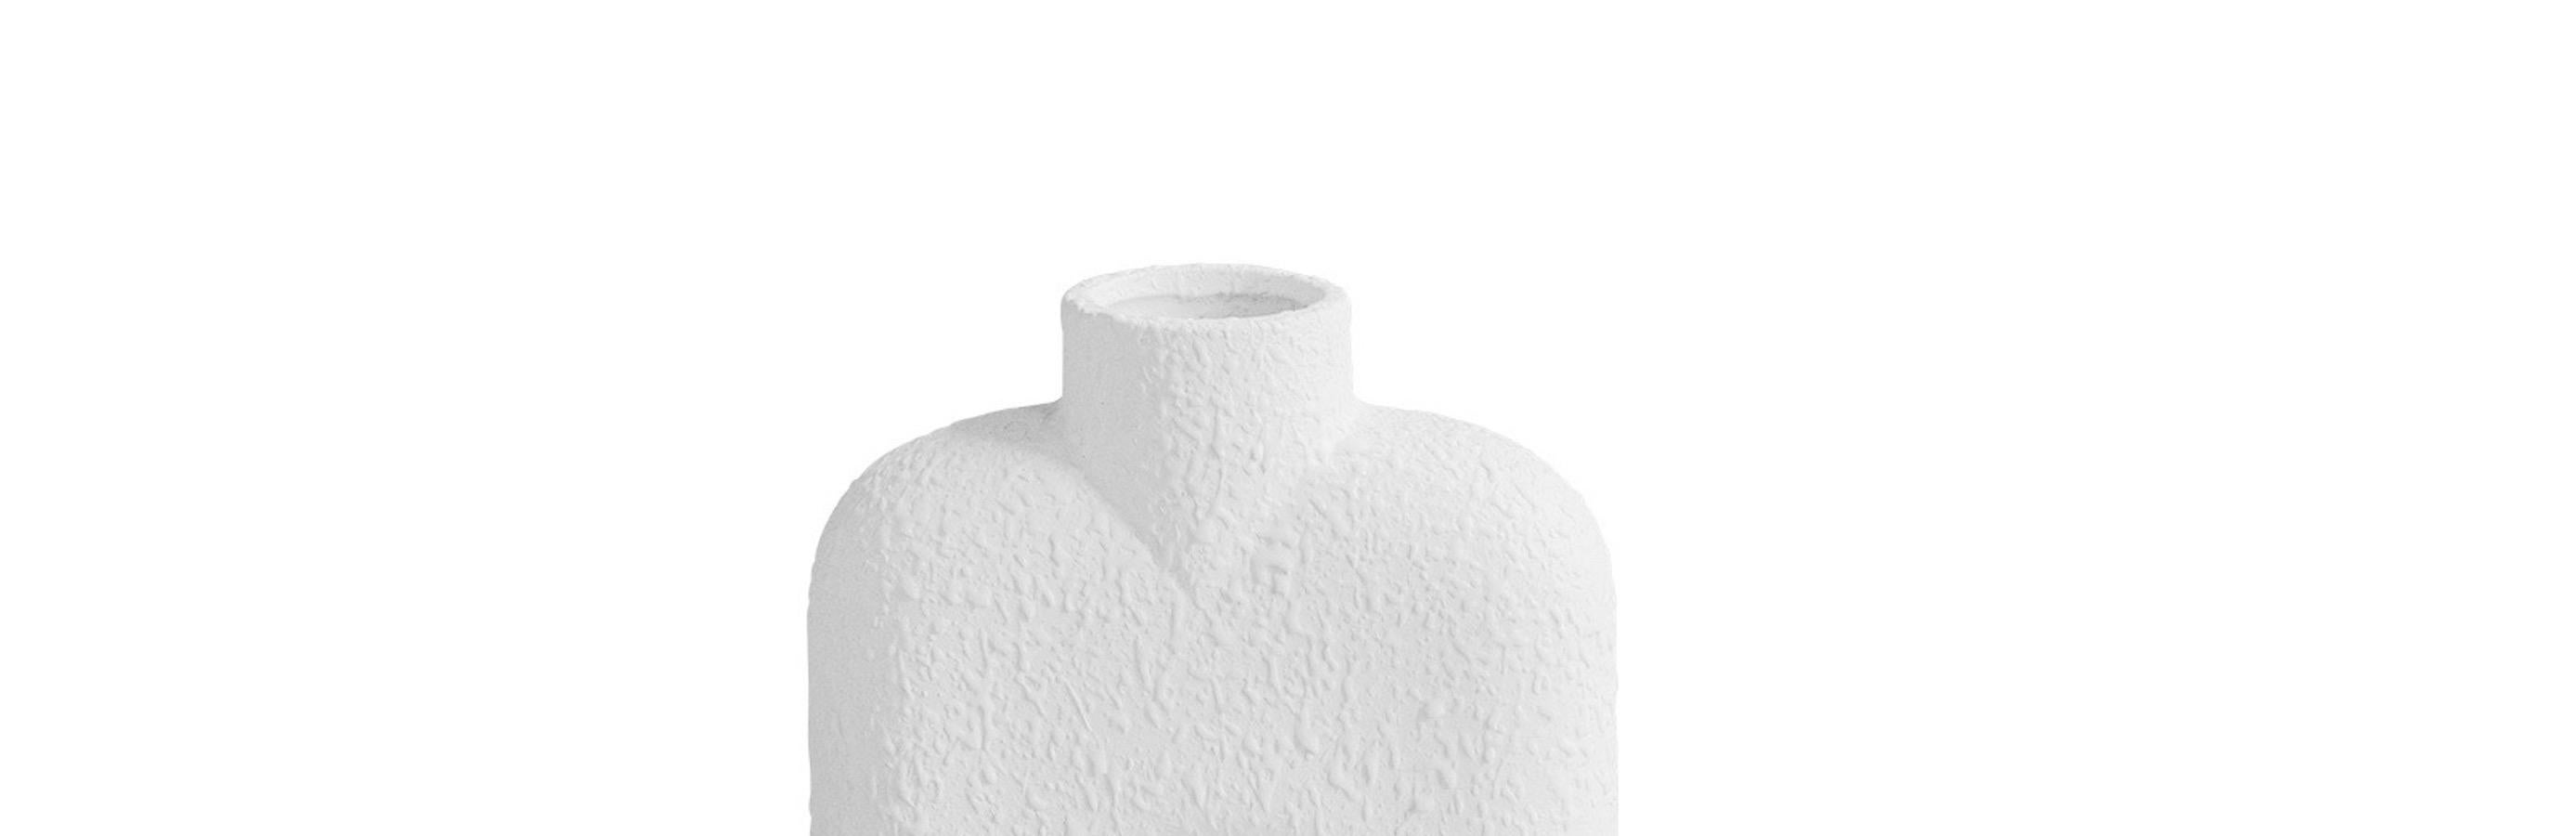 Grand vase en céramique blanche texturée de conception danoise contemporaine, avec un seul bec central rond sur une base de deux sphères rondes.
Un design très sculptural.
Deux disponibles et vendus individuellement.
 

   